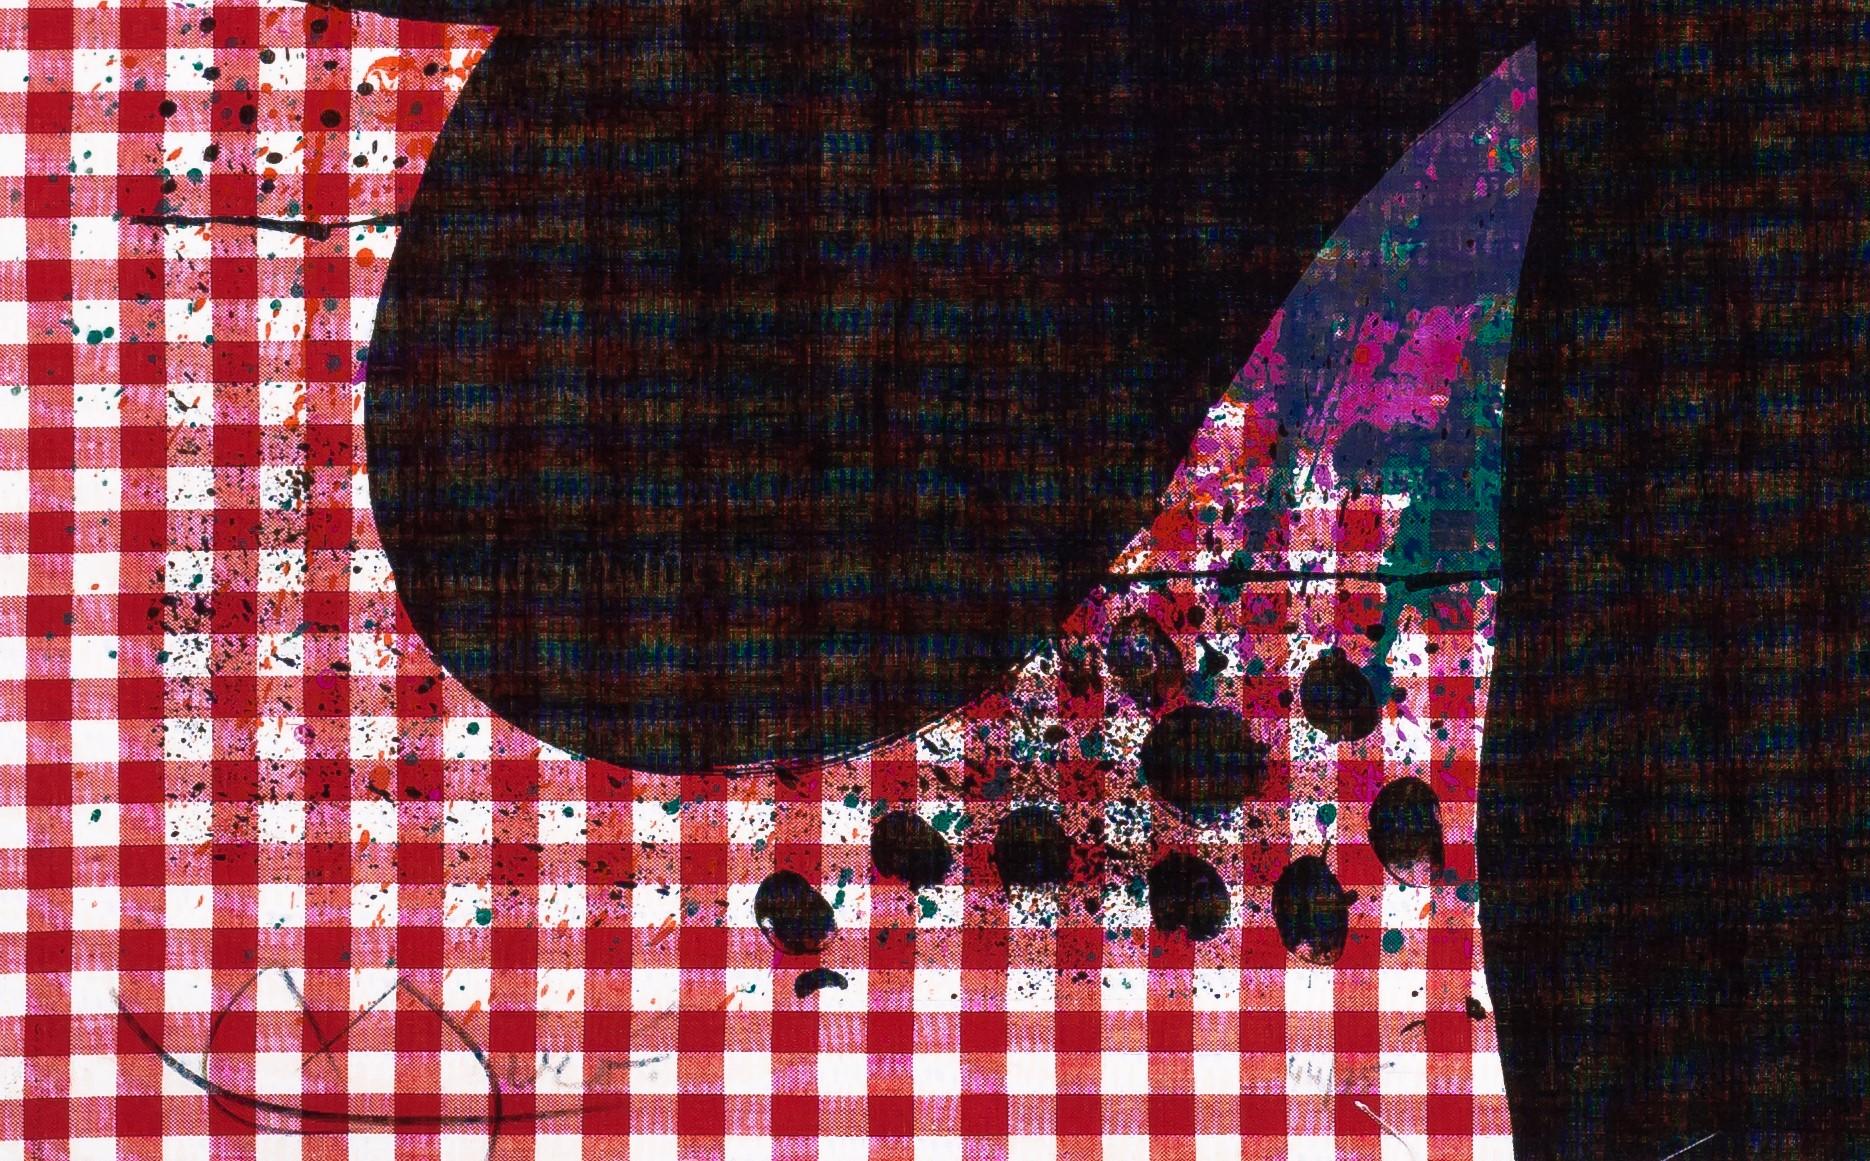 Die Badende ist eine Lithografie auf kariertem Stoff mit Chiffon de Mandeure auf der Rückseite, Bildgröße 34 x 23,5 Zoll, signiert Miró unten links und kommentiert unten in der Mitte.

The Bather ist die erste einer 1969 begonnenen Serie von